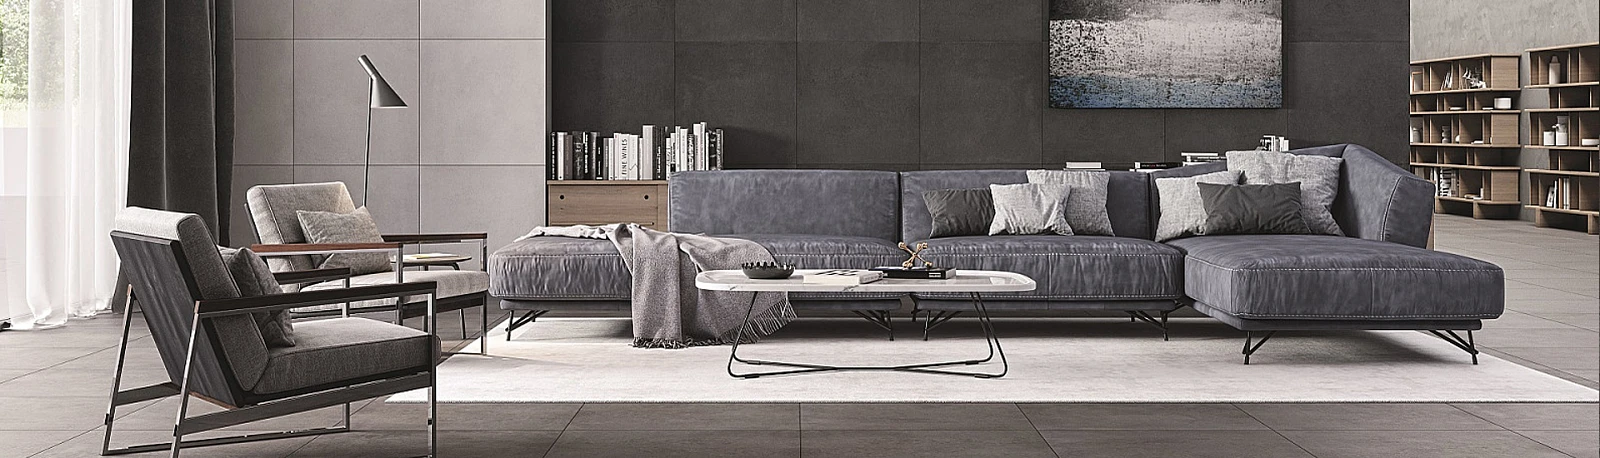 inn_k.jpg  Miękko i wygodnie - modułowa sofa w salonie | Wyposażenie wnętrz MAXFLIZ